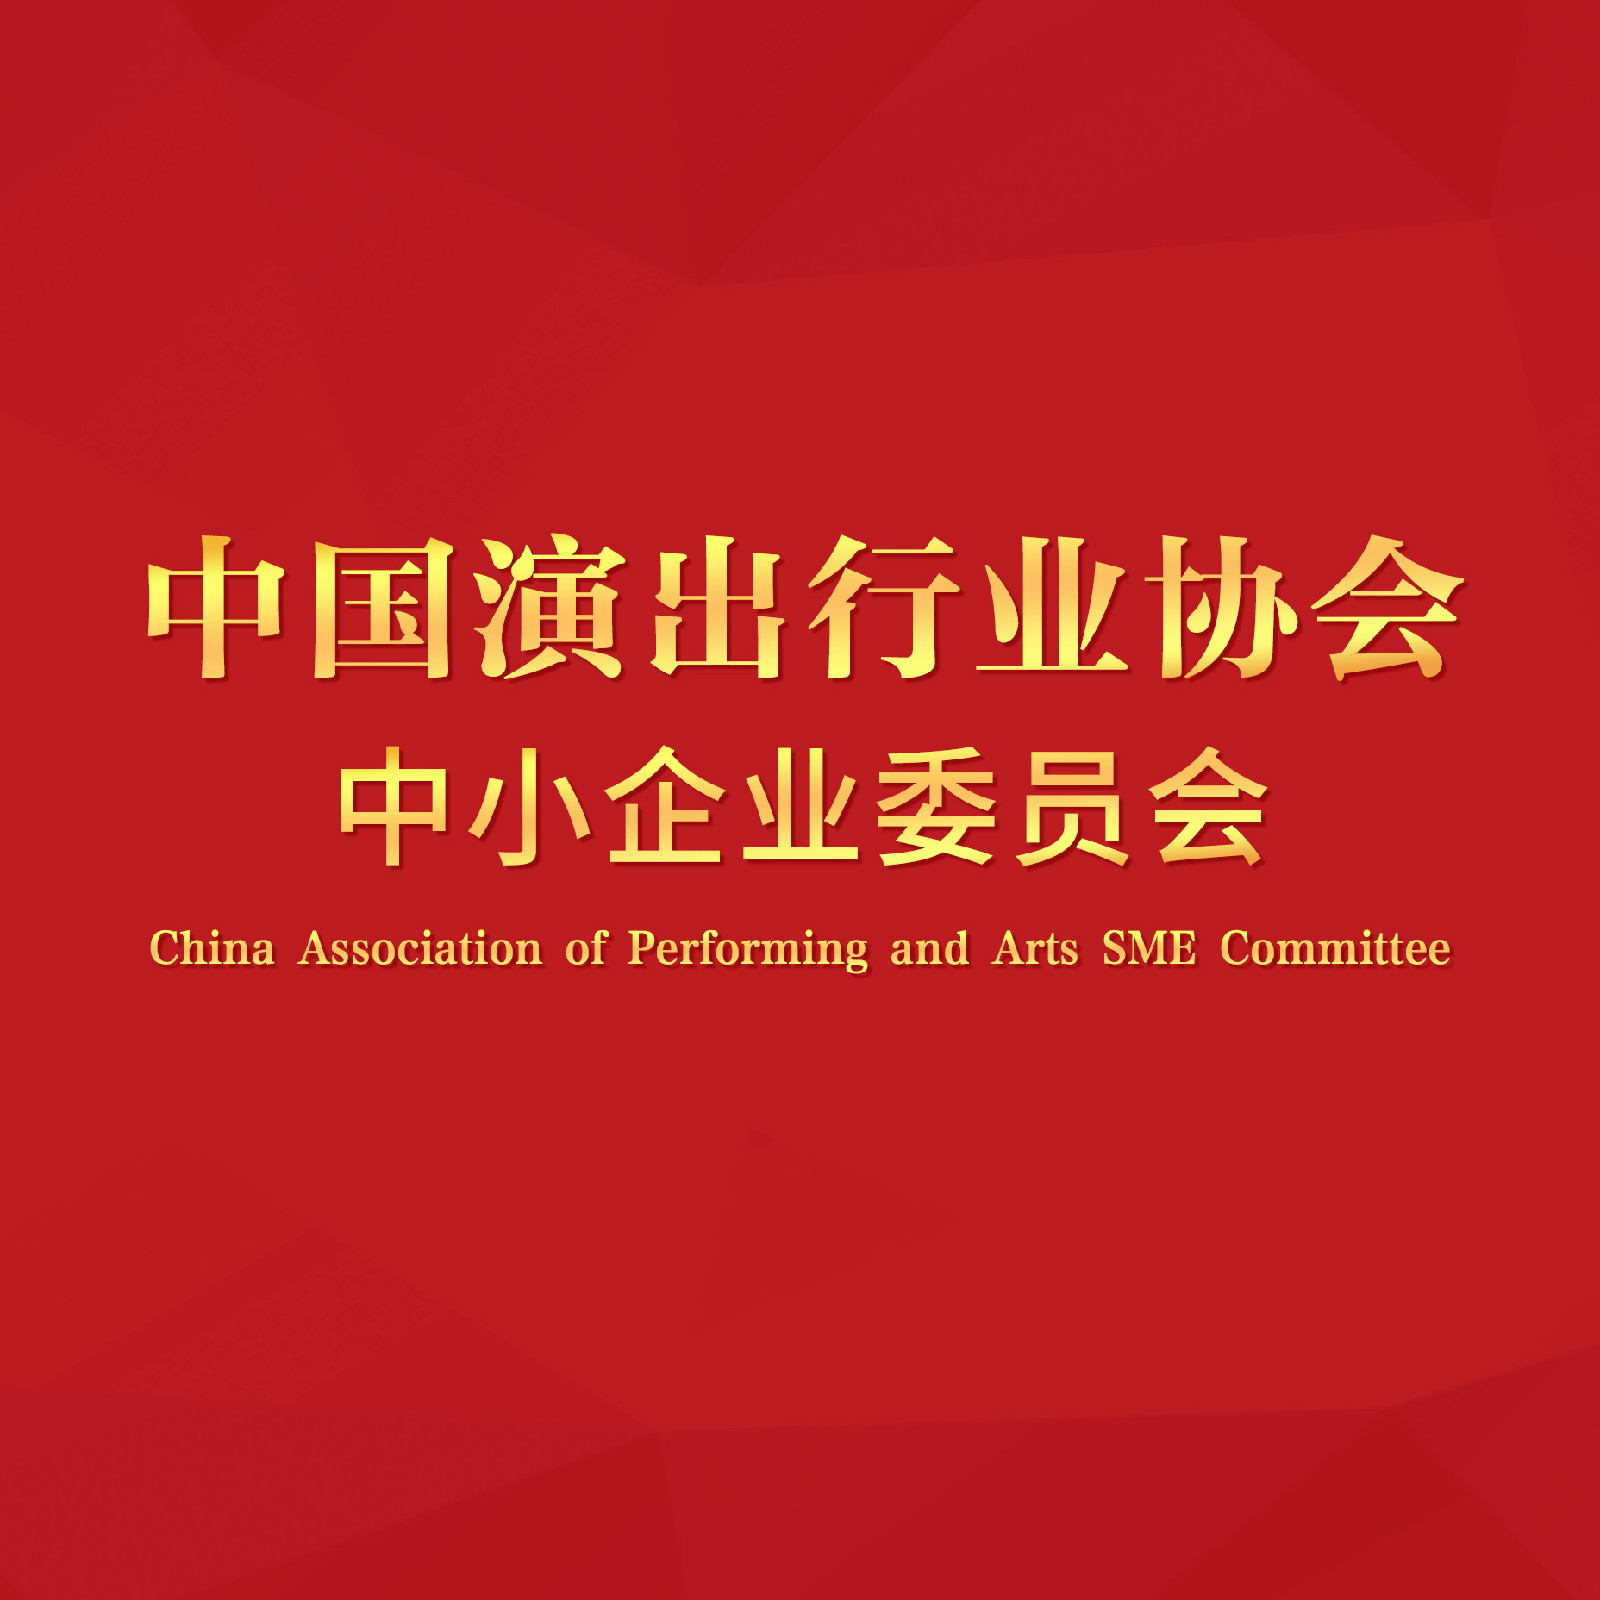 中國演出行業協會中小企業委員會